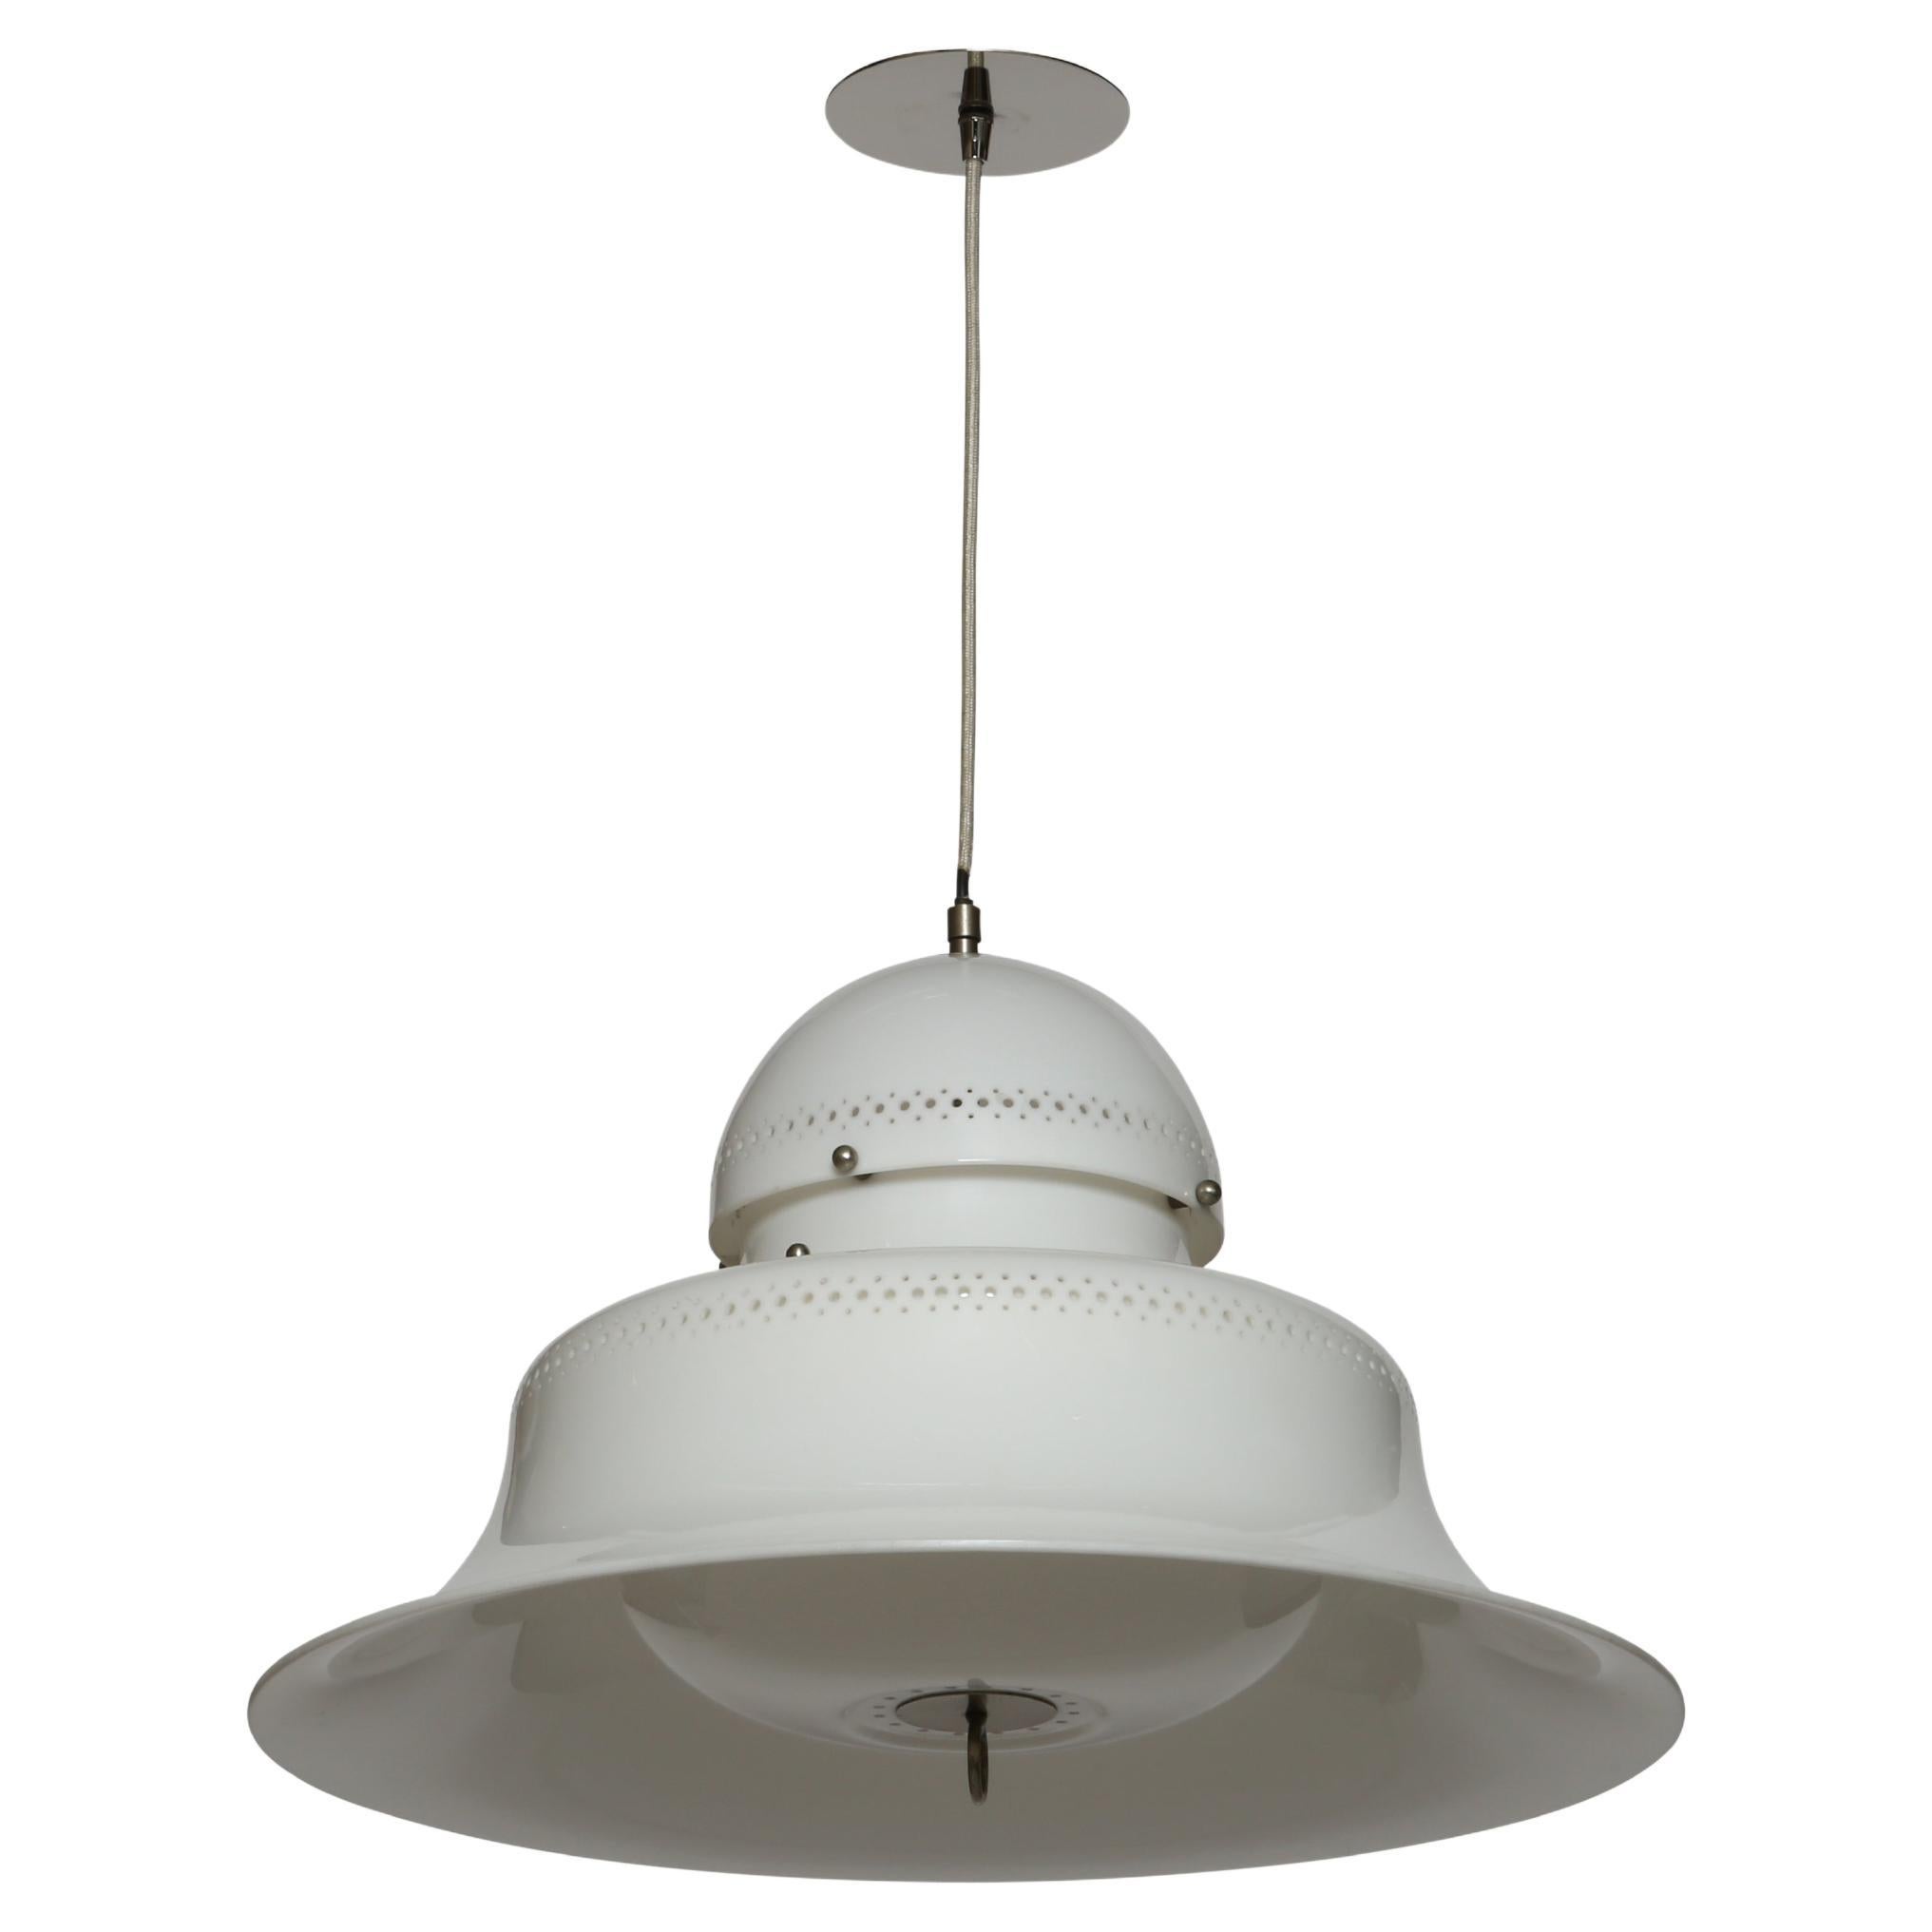 Sergio Asti for Kartell ceiling light model KD14 For Sale